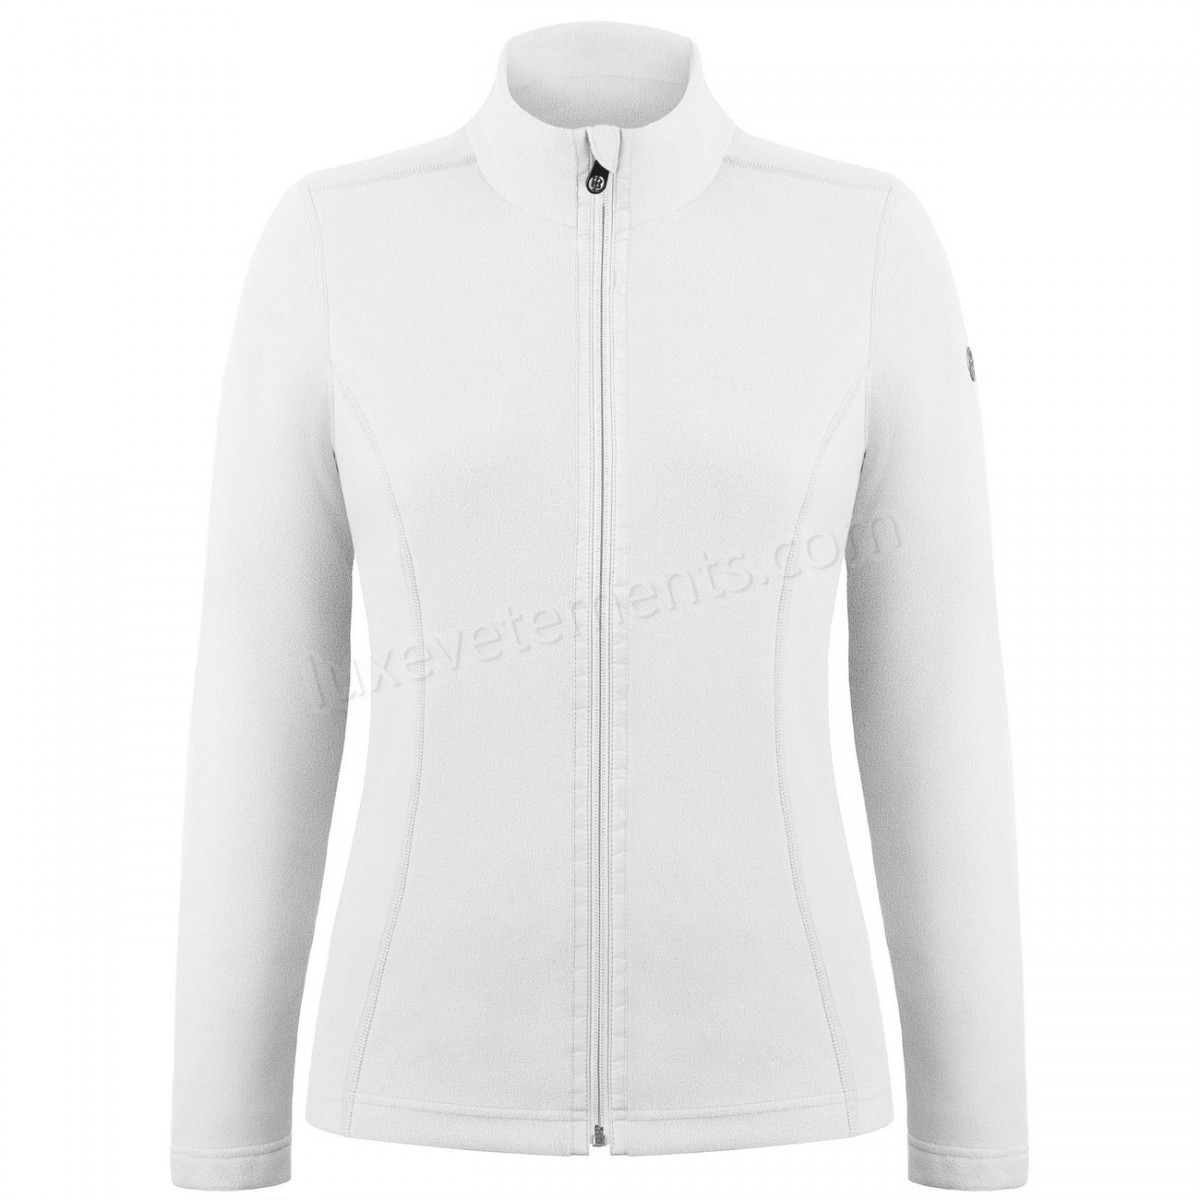 Poivre Blanc-Sports d'hiver femme POIVRE BLANC Veste Polaire Poivre Blanc Fleece Jacket 1500 White Femme Vente en ligne - -0